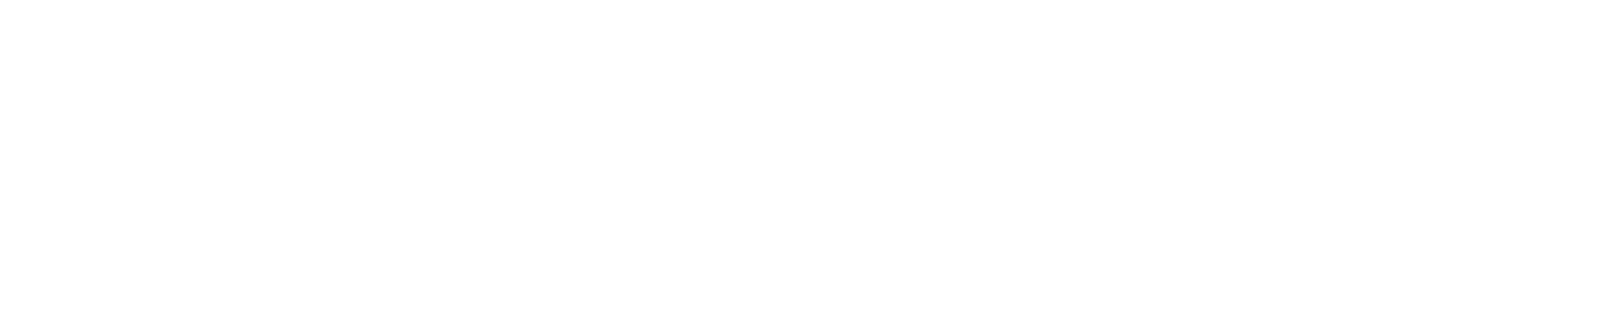 Helios Weather Station Logo White Strip